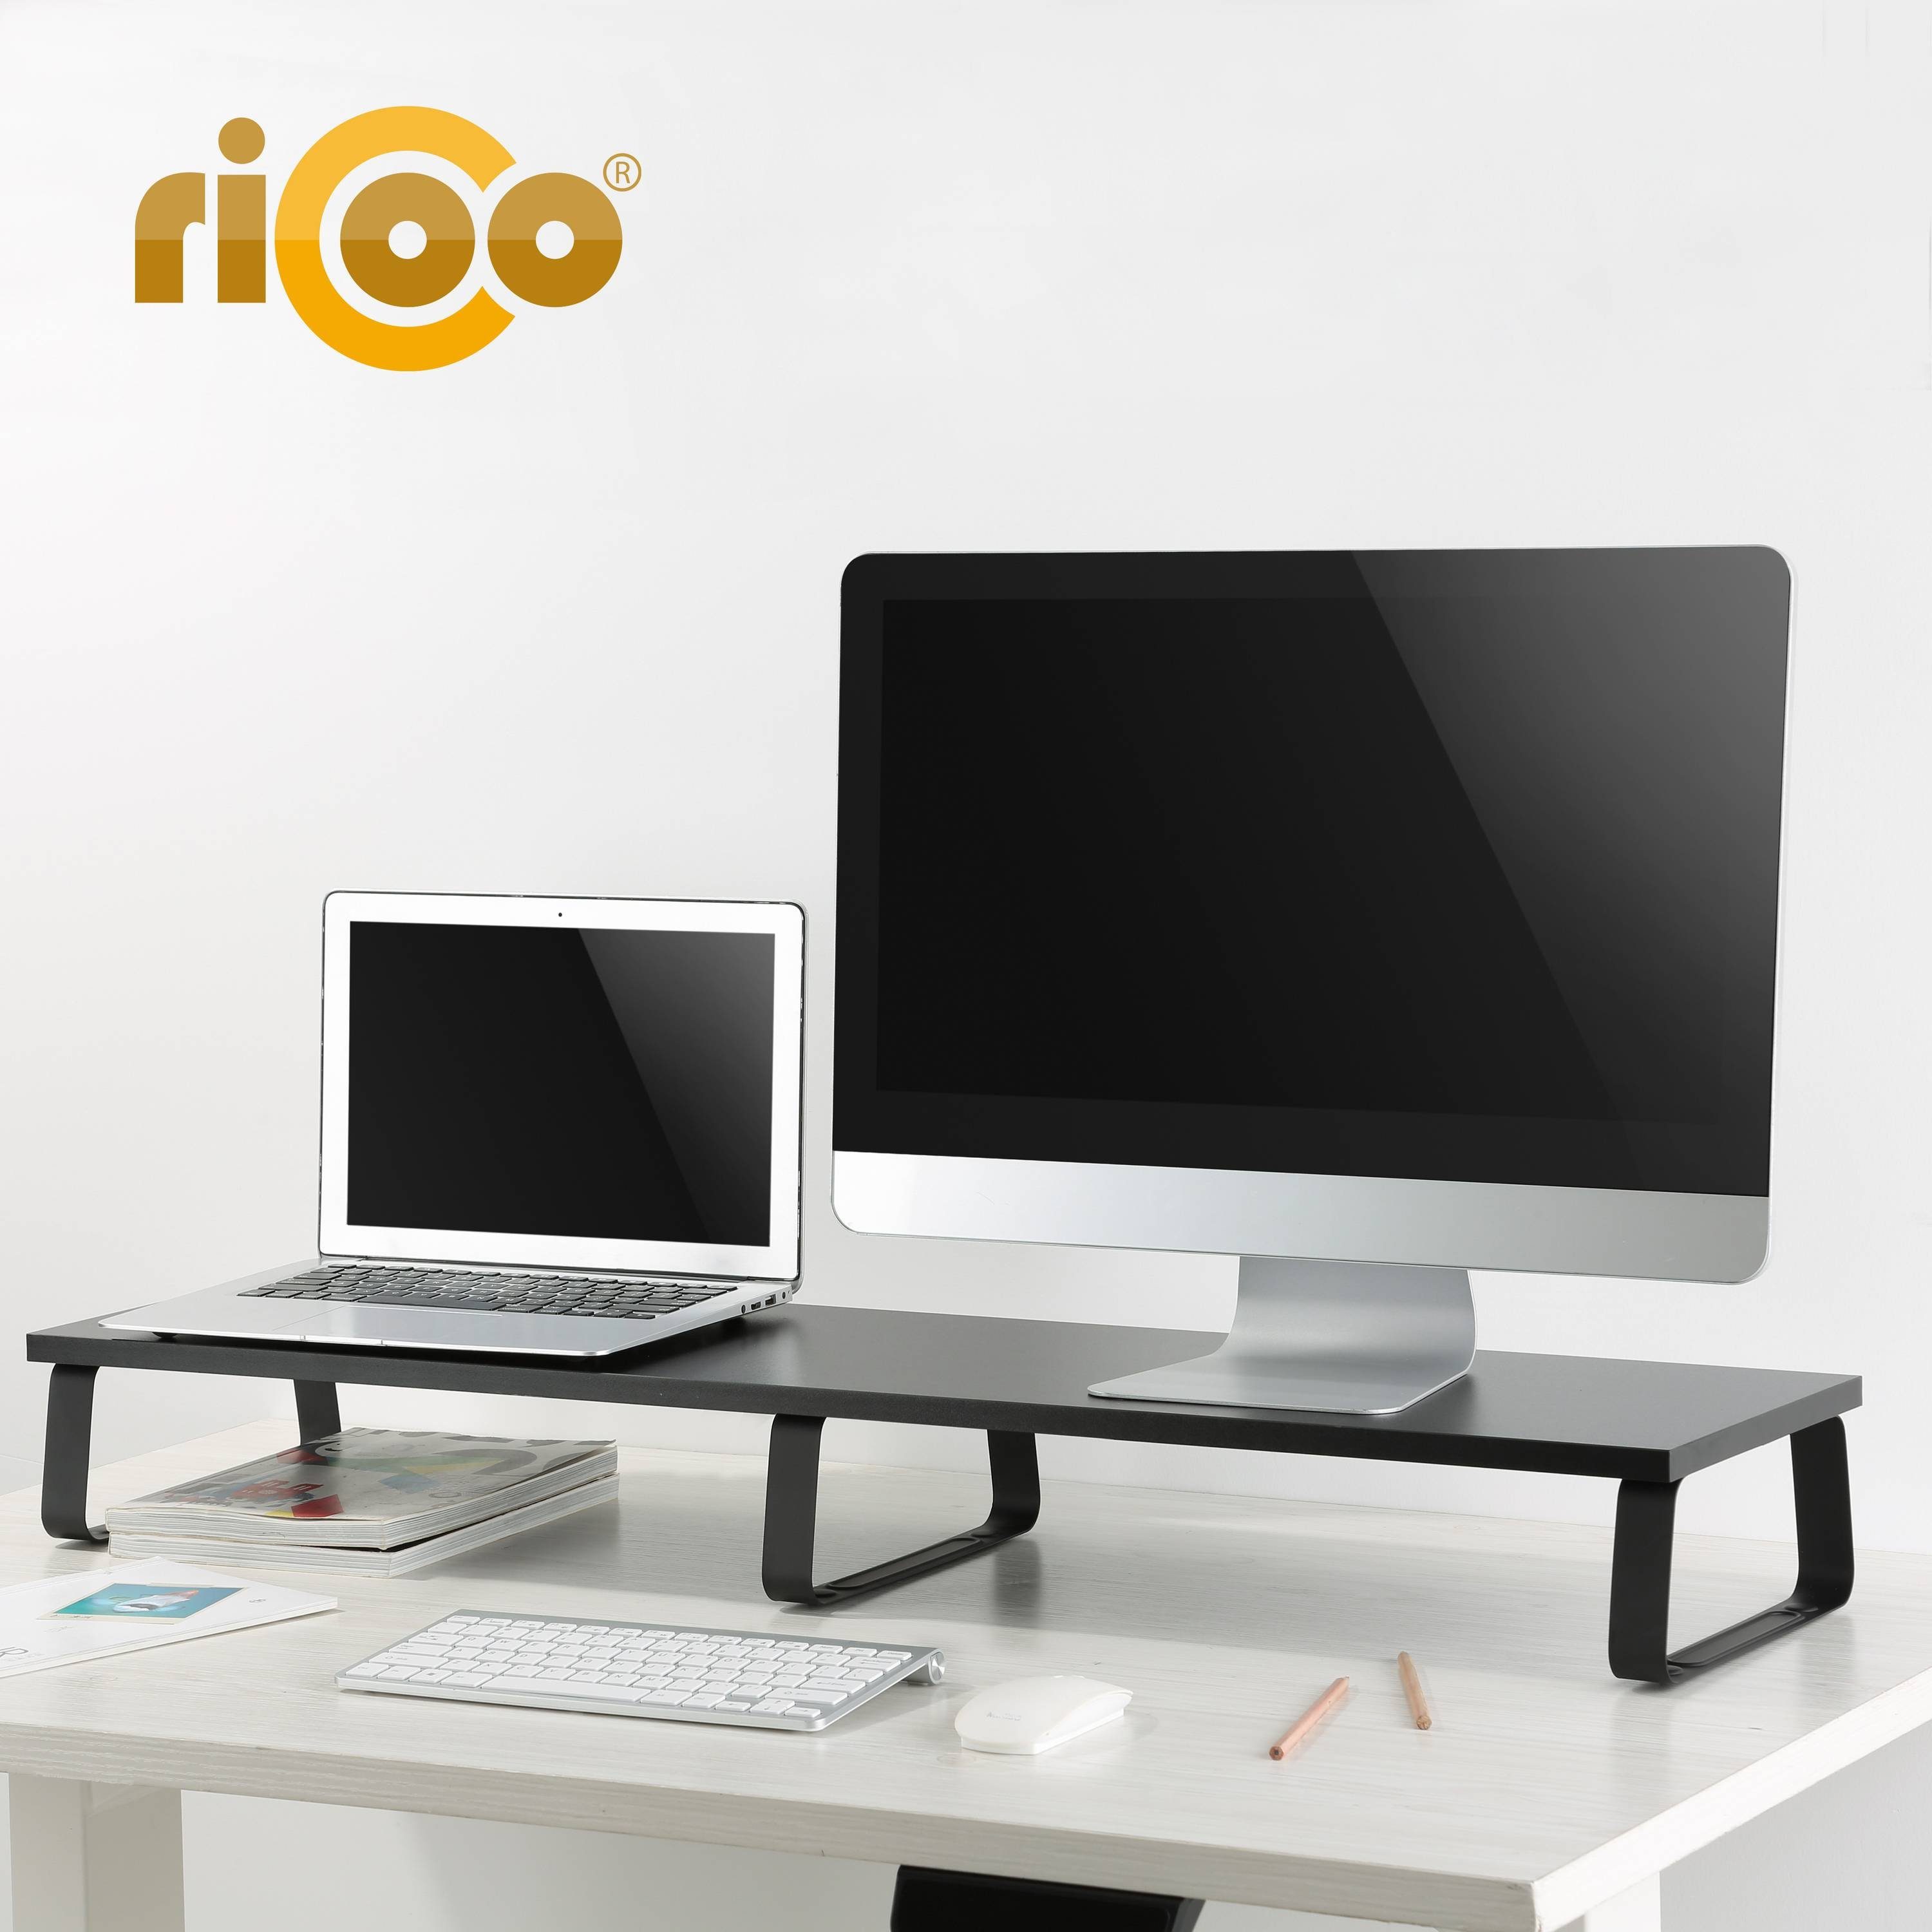 Aufsatz Monitorständer Tisch Schreibtischaufsatz Schreibtisch Monitorerhöhung FS0112, RICOO Bildschirm